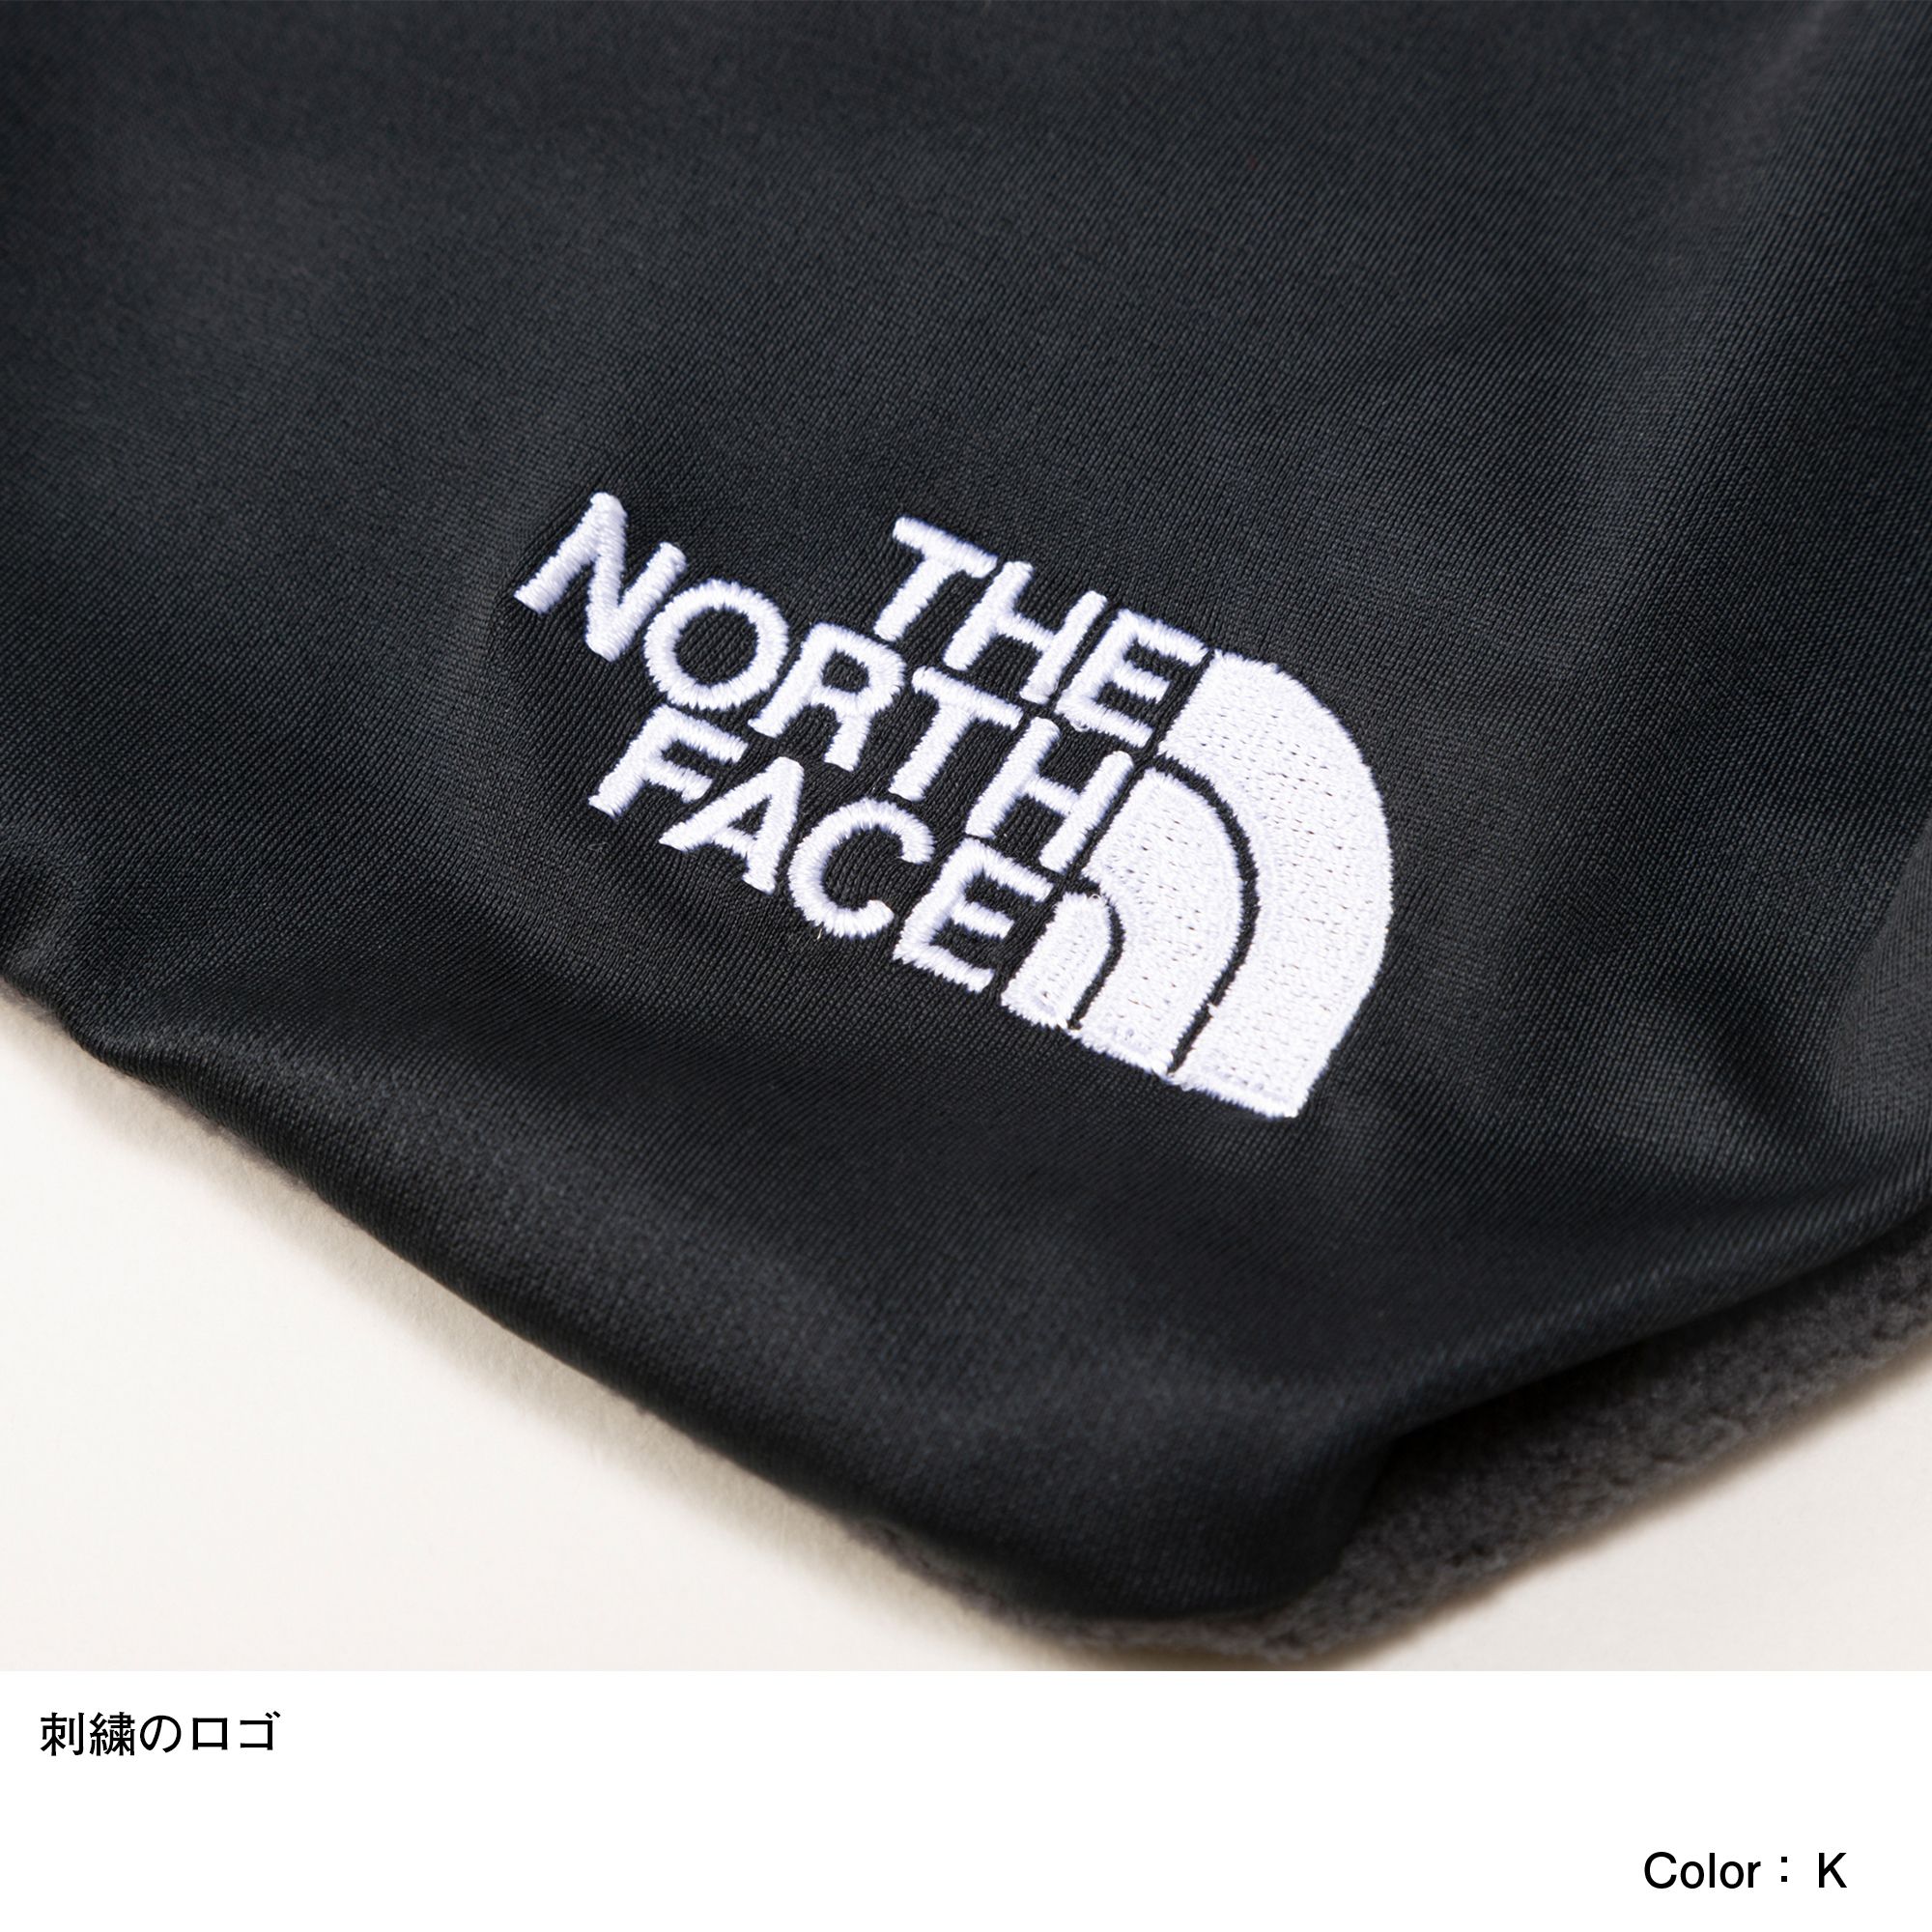 スーパーライトキャンプピロー（NN32225）- THE NORTH FACE公式通販